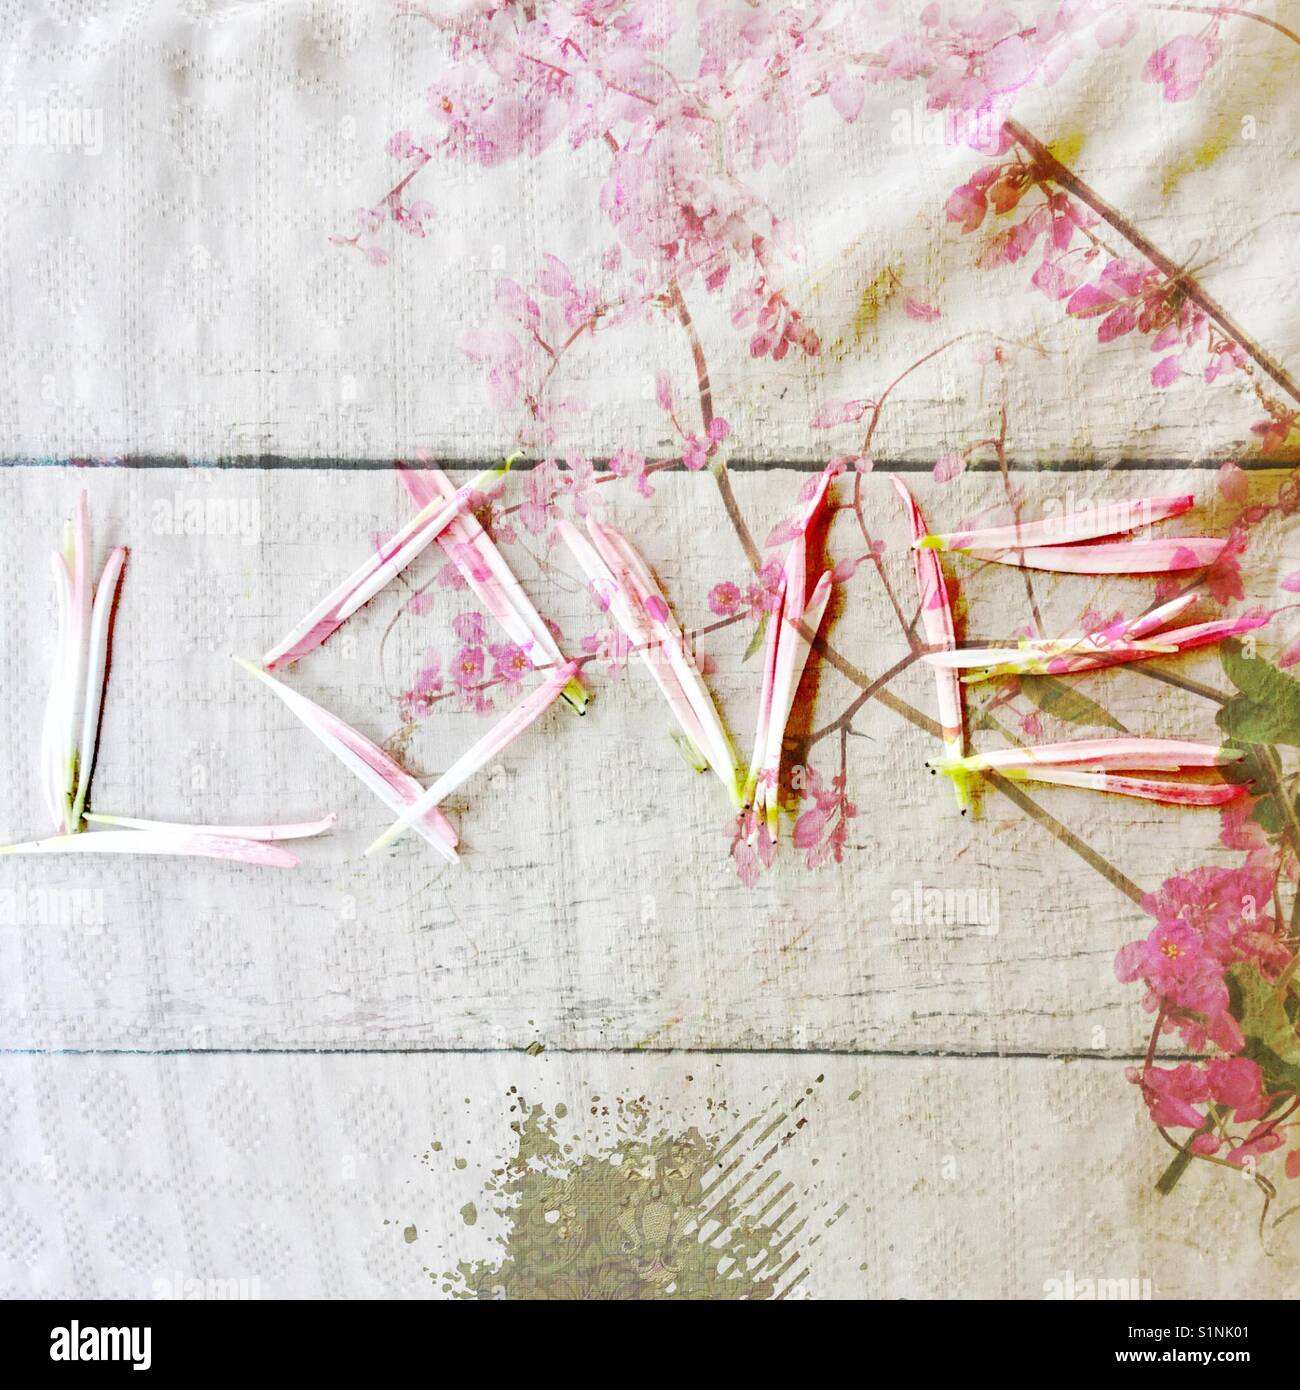 "L'amore cresce' iphone foto, petali formanti la parola "amore", con rosa vitigni floreali su legno bianco e doppio effetto di esposizione Foto Stock